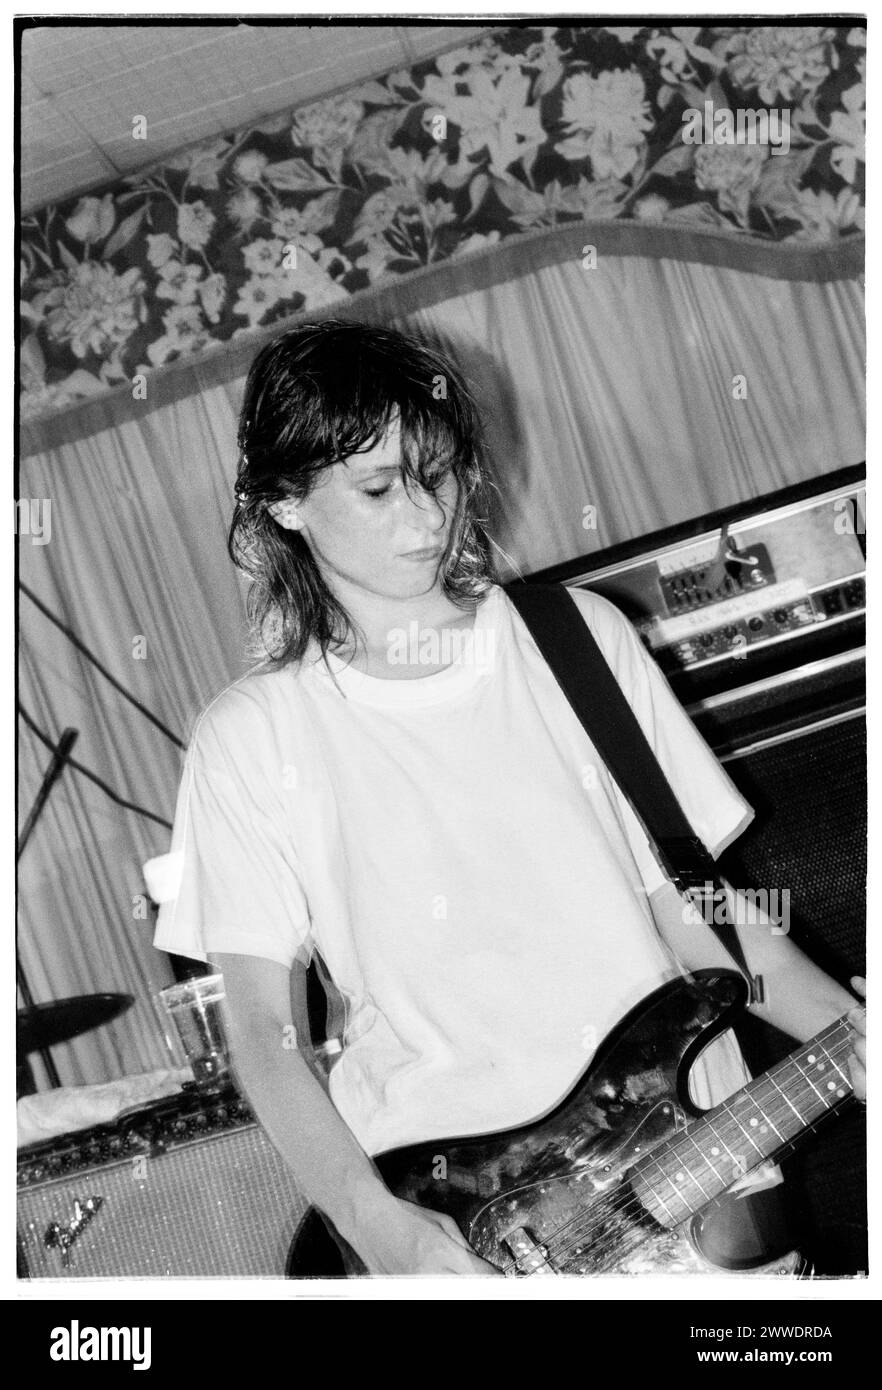 ELASTICA, GIOVANE, PRIMO CONCERTO, 1994: Annie Holland, bassista originale di elastica, che suona un concerto di beneficenza dal vivo al King's Head Hotel di Newport, Galles, 23 agosto 1994. Fotografia: Rob Watkins. INFO: Elastica, un gruppo musicale alternative rock britannico formatosi nel 1992, ha ottenuto il plauso con il loro album di debutto omonimo. Successi come "Connection" hanno mostrato le loro influenze post-punk e New Wave. Guidata da Justine Frischmann, il contributo di elastica all'era Britpop fu significativo. Foto Stock